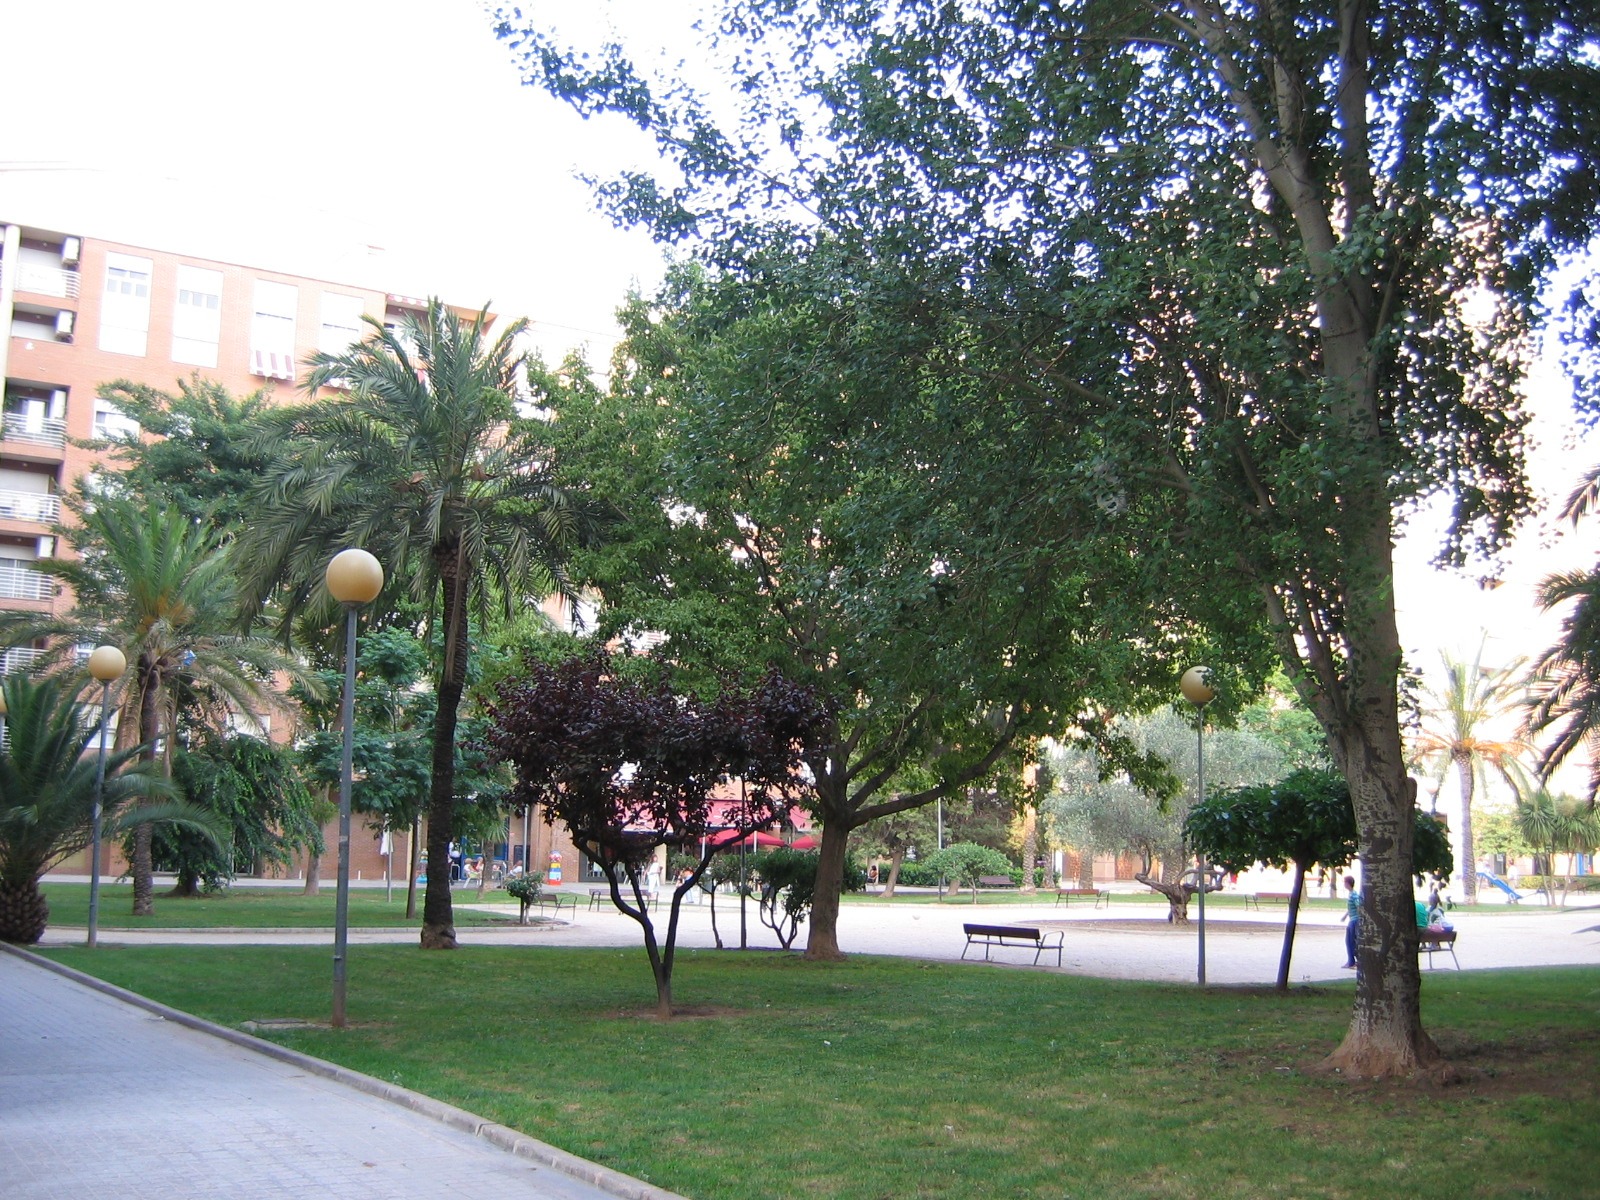 In Valencia war es das NH Hotel Las Ciencas, mit toller Umgebung